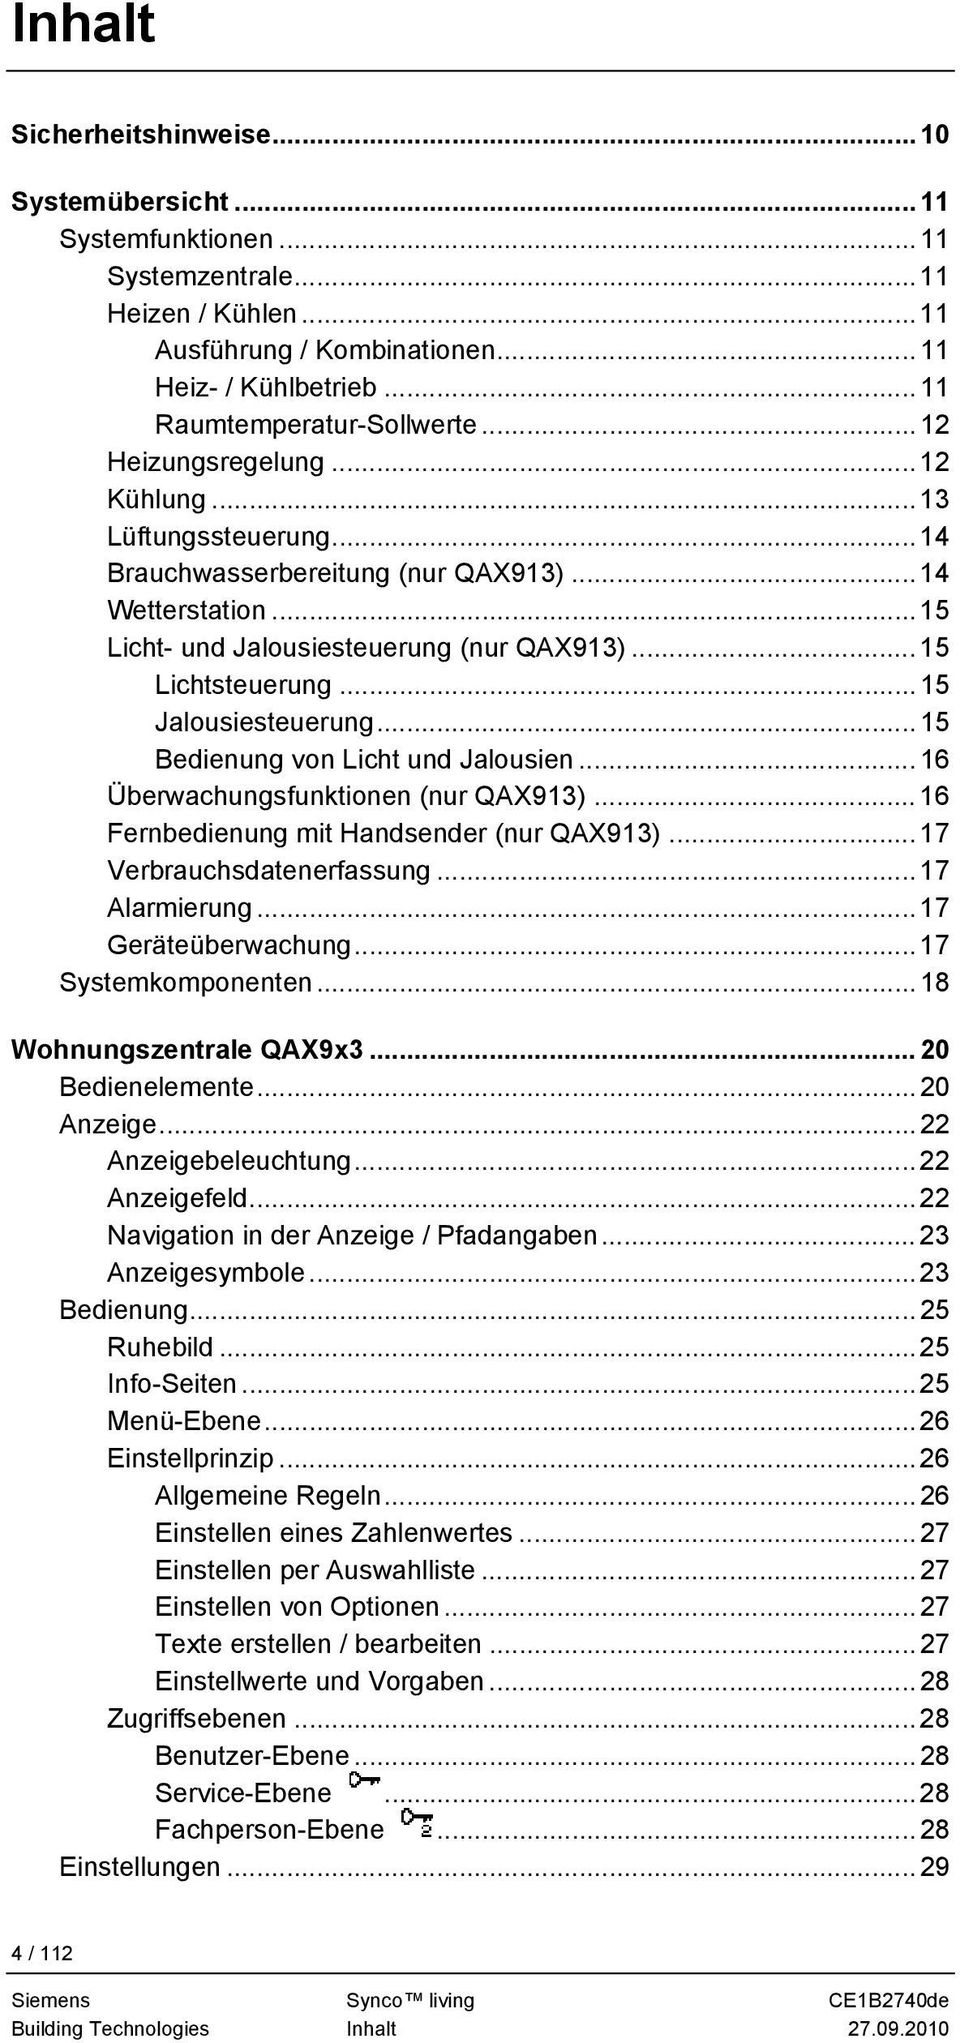 ..15 Jalousiesteuerung... 15 Bedienung von Licht und Jalousien... 16 Überwachungsfunktionen (nur QAX913)... 16 Fernbedienung mit Handsender (nur QAX913)... 17 Verbrauchsdatenerfassung...17 Alarmierung.